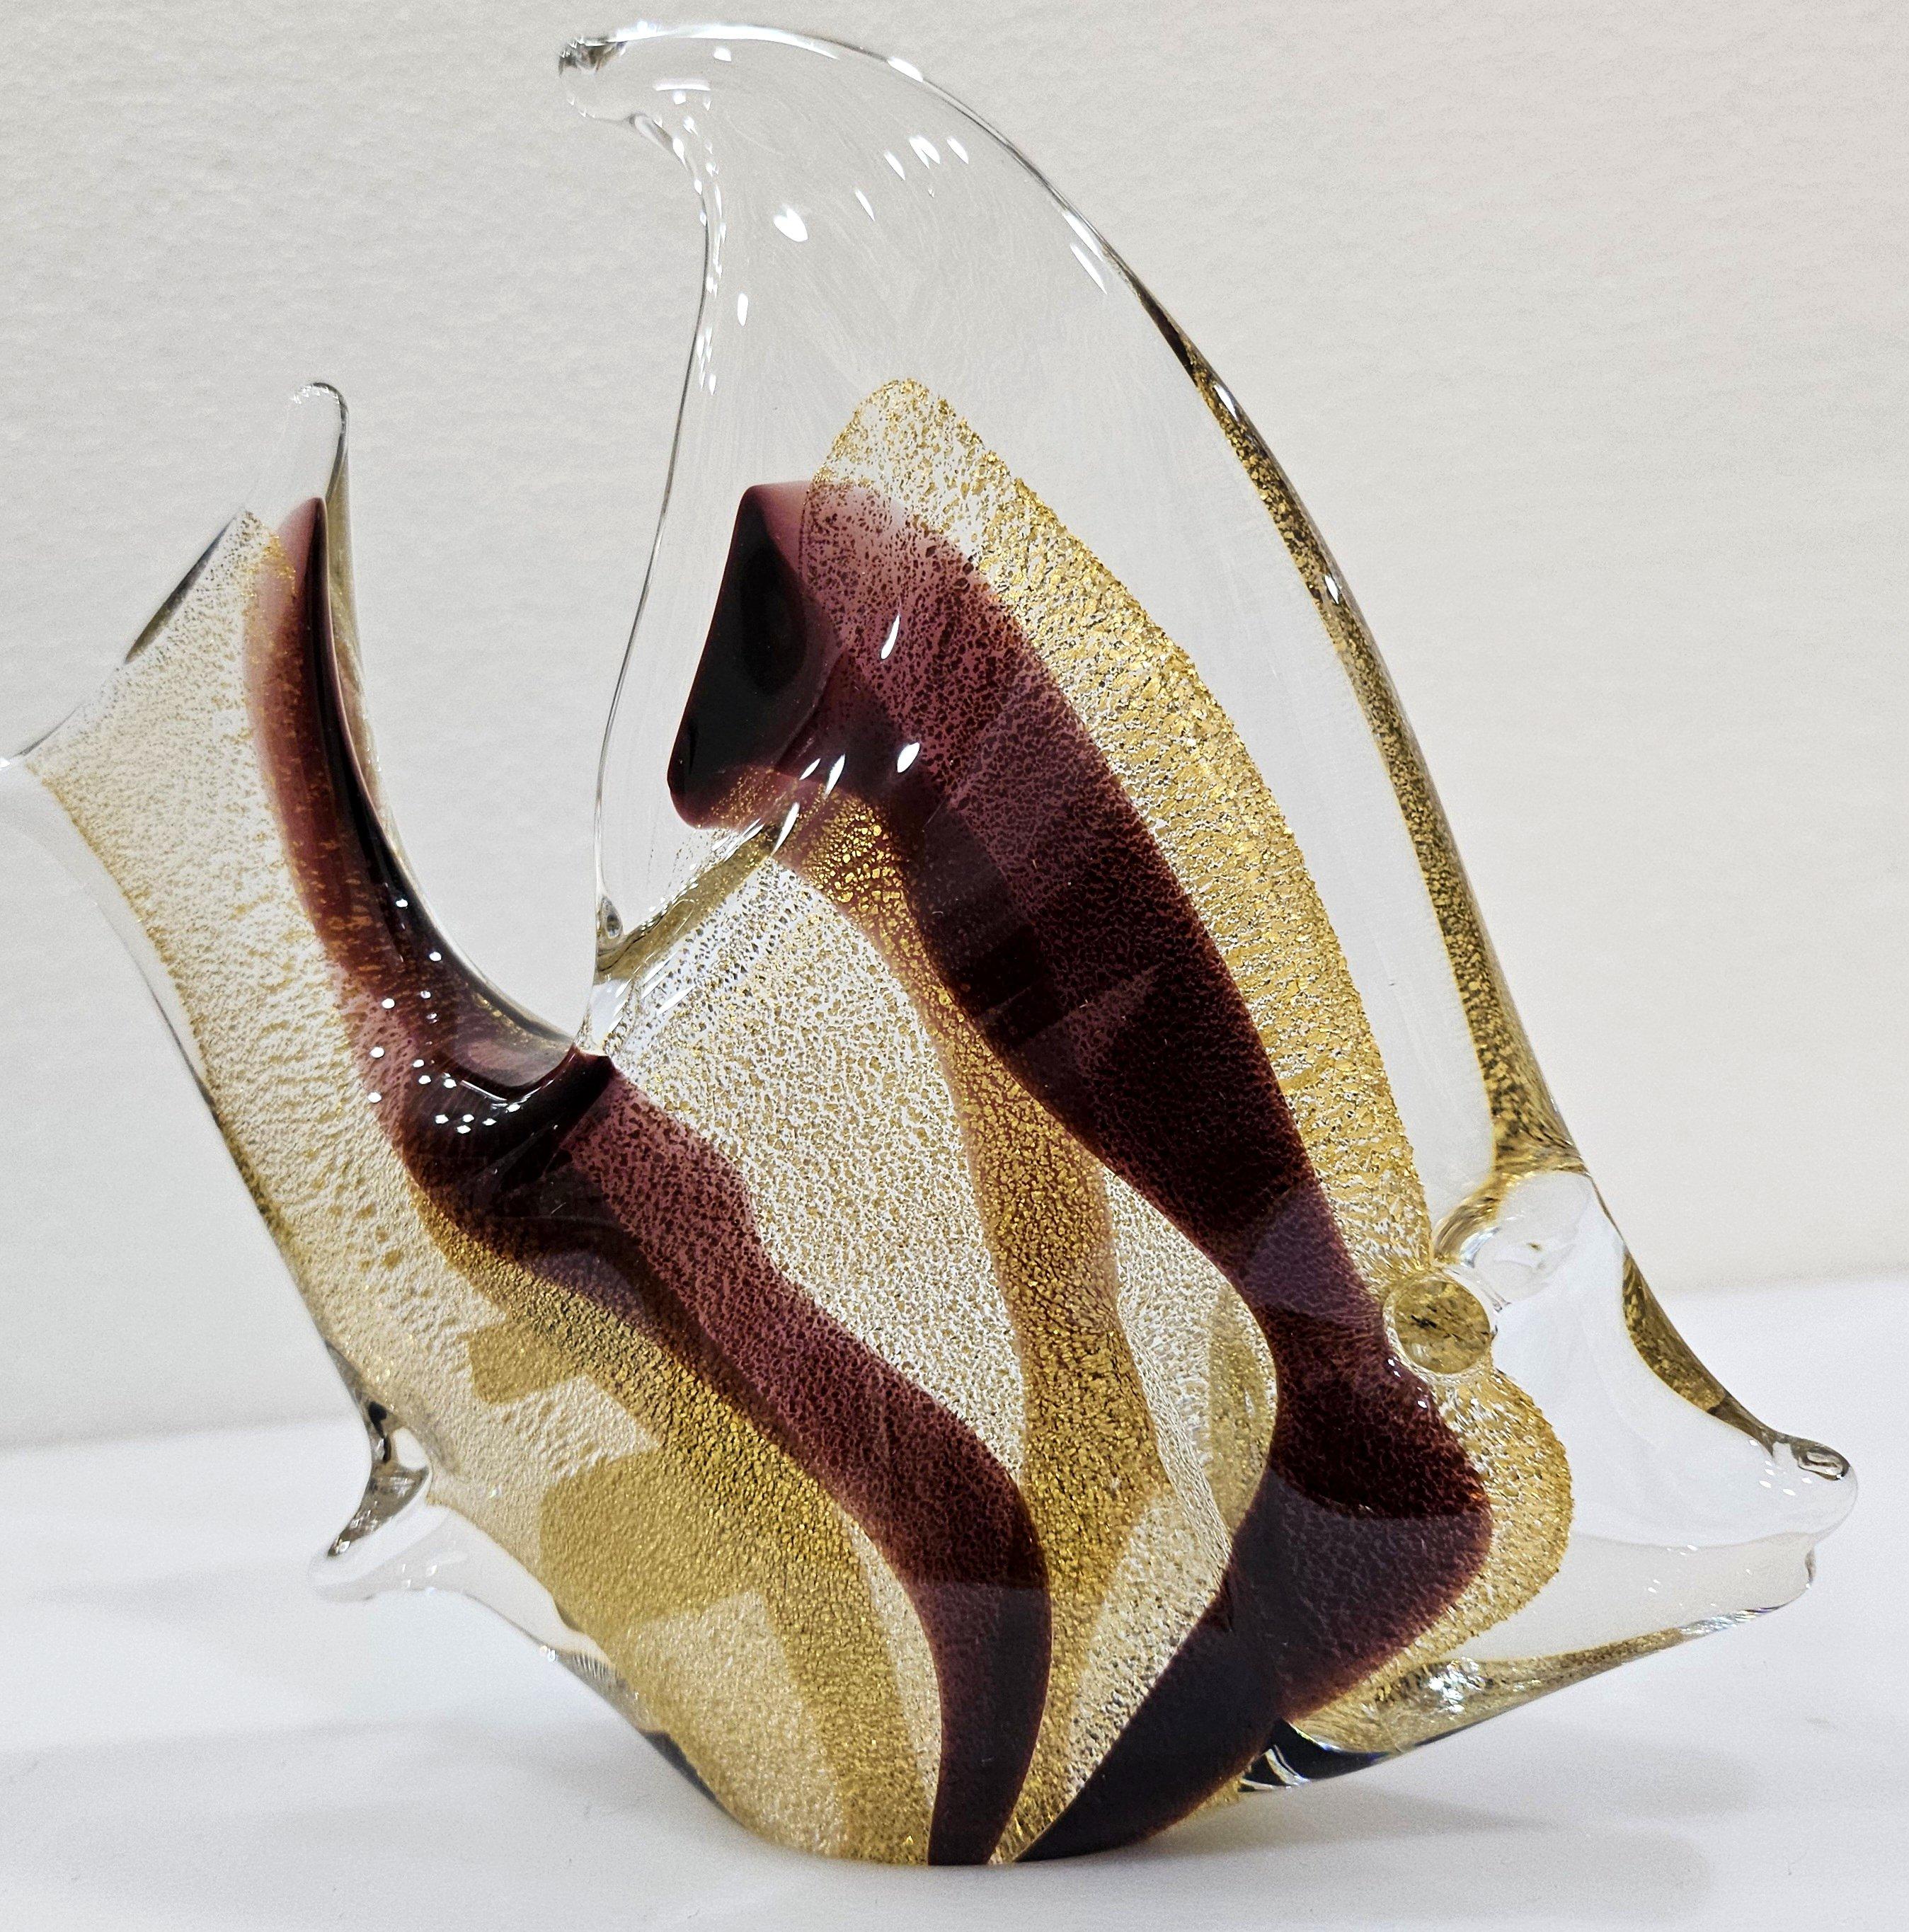 Sculpture de poisson en verre, infusée à l'or 24k, signée par Josef Marcolin.
En plus de la signature sur le fond, la pièce possède également ses deux labels d'origine.  
Dans le travail du verre de Murano, les inclusions d'or dans le verre sont